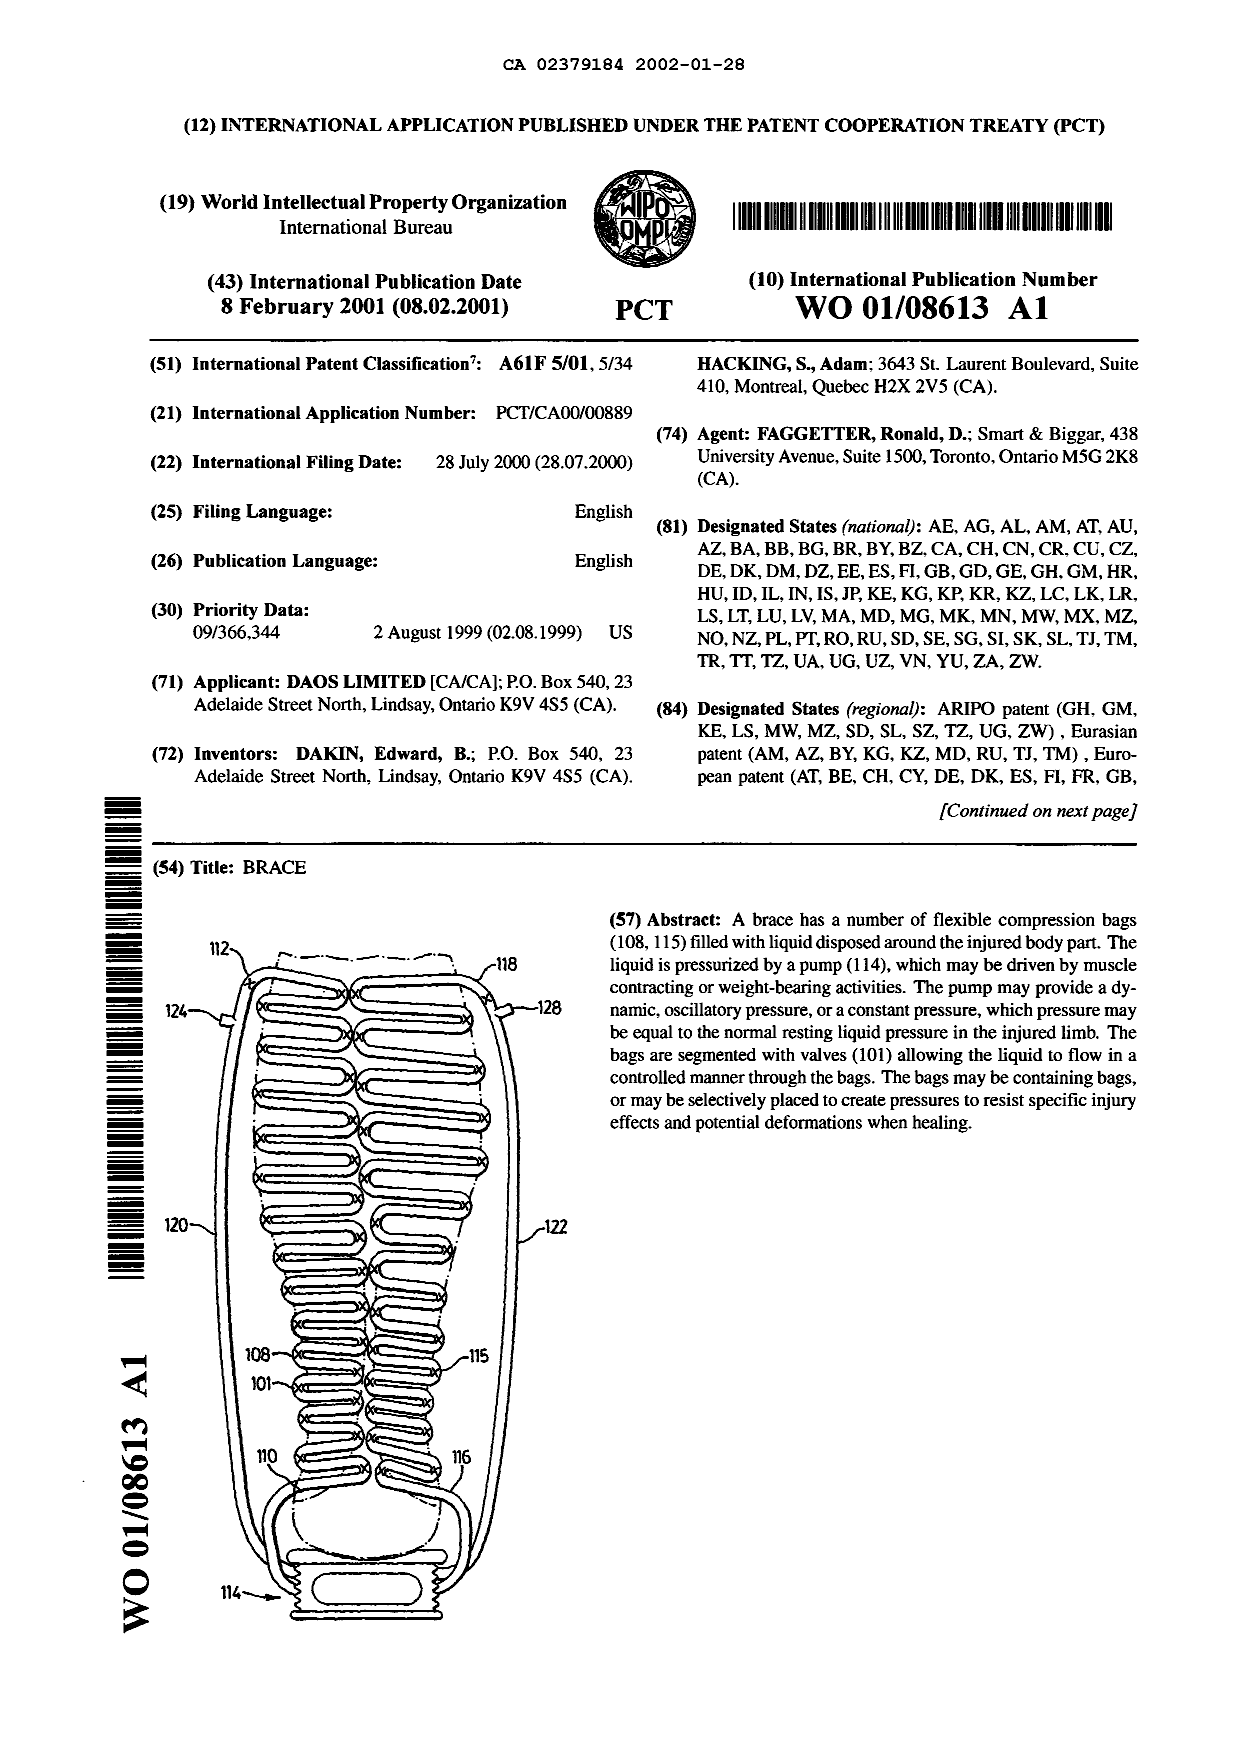 Document de brevet canadien 2379184. Abrégé 20020128. Image 1 de 1